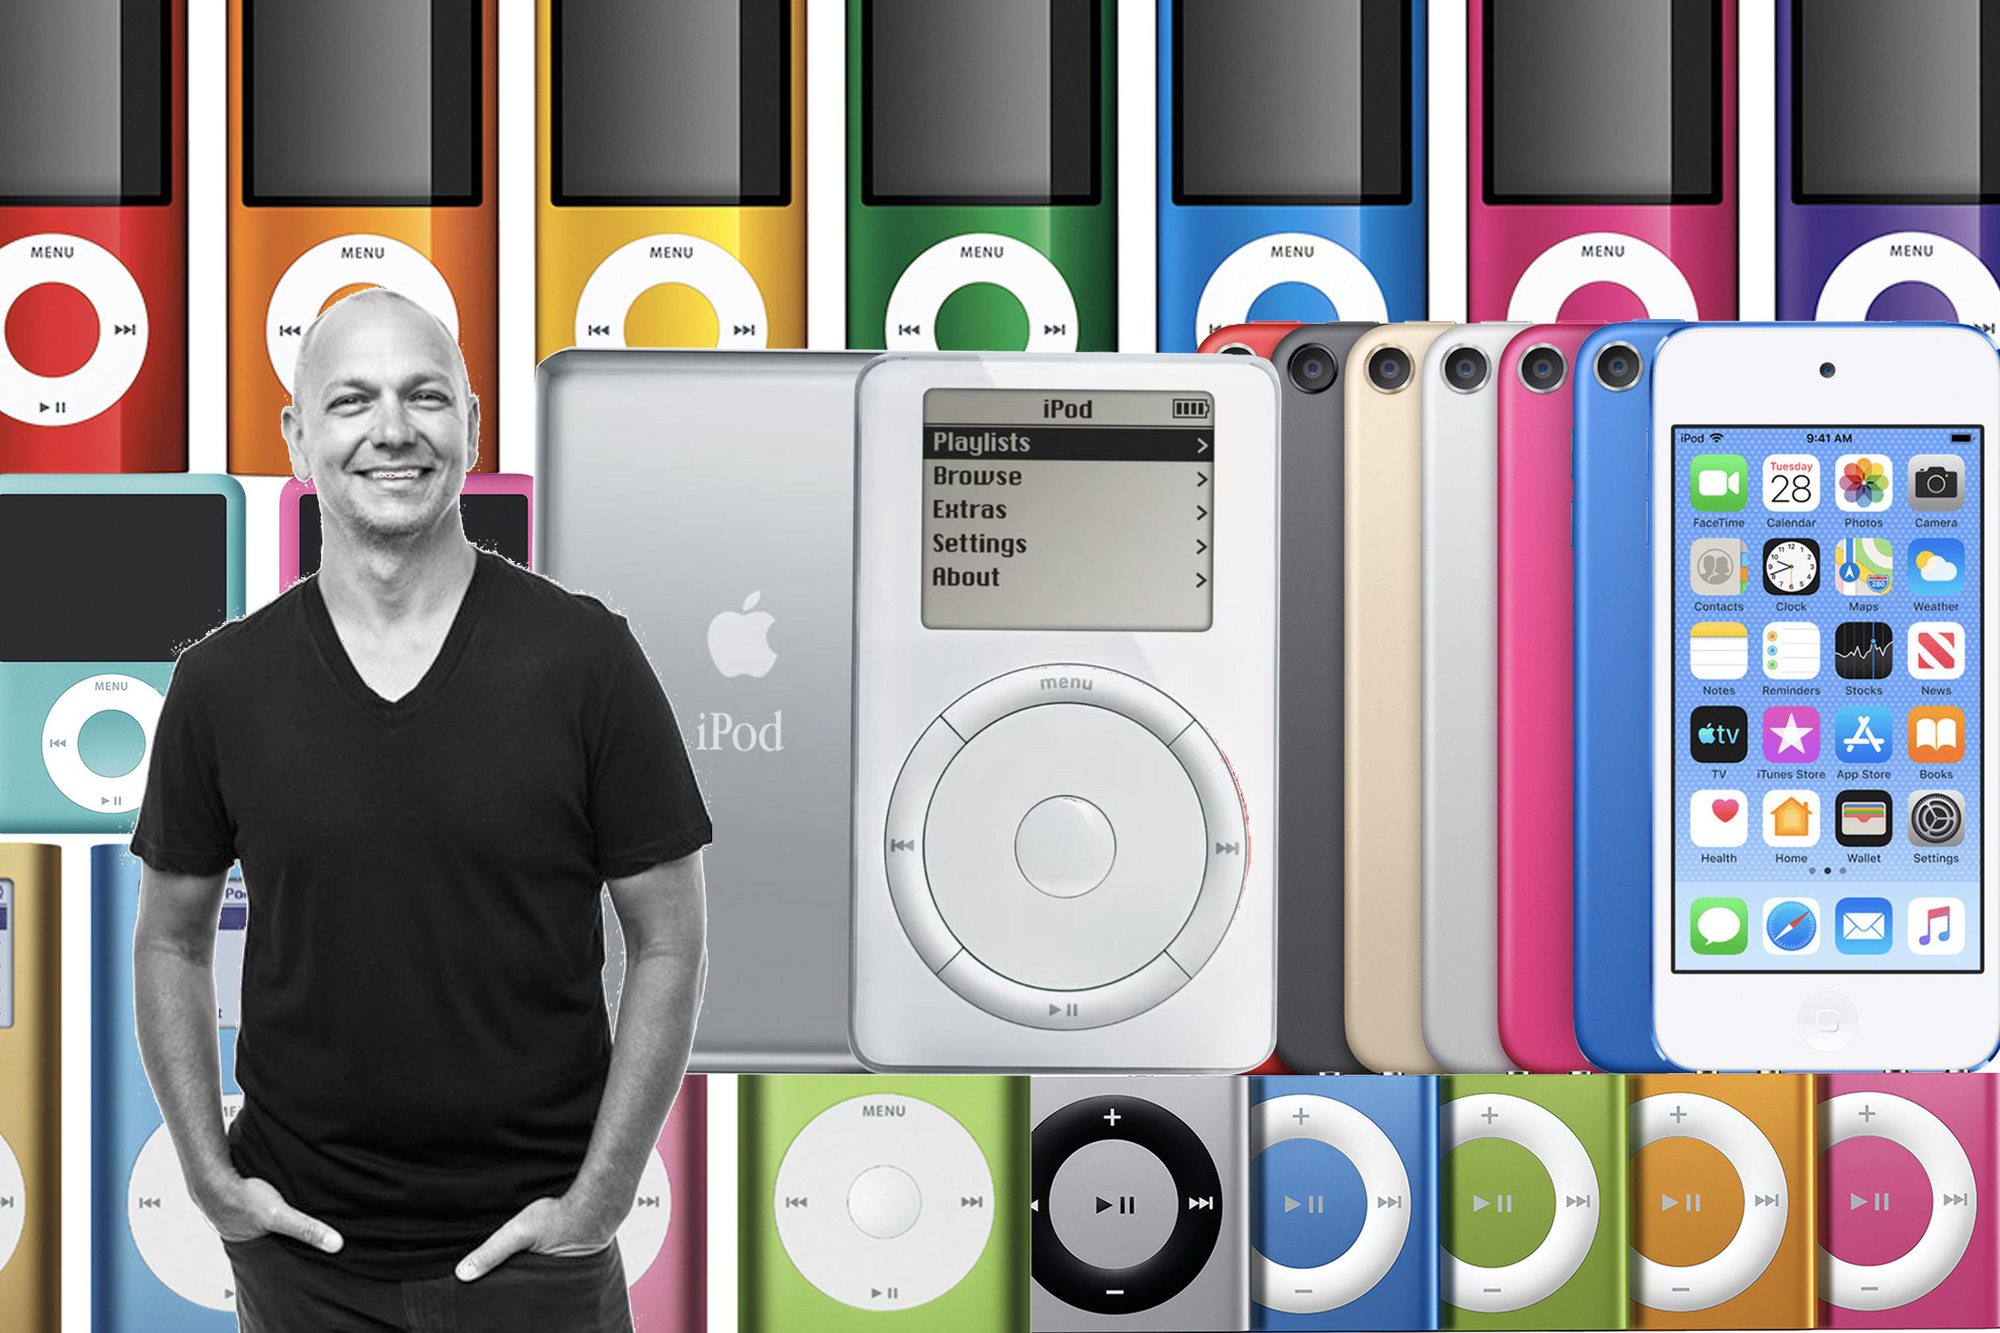 Cha đẻ của iPod nhận định: Metaverse không có tương lai, và Apple sẽ ra mắt phần cứng bom tấn mới trong 10 năm tới - Ảnh 2.